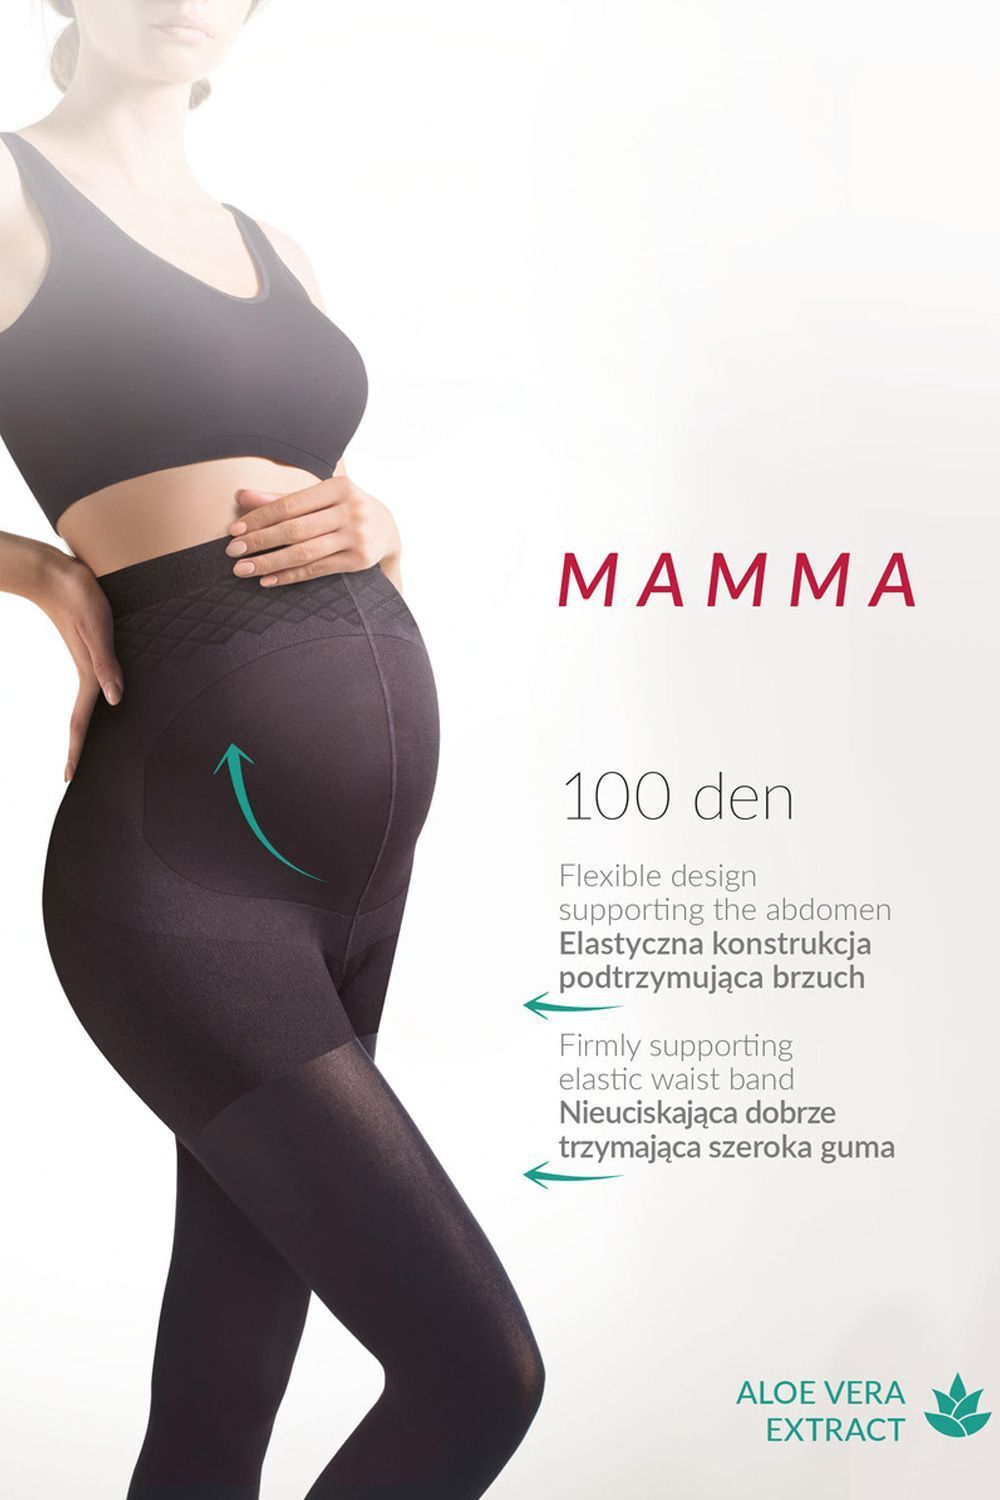 Черные колготки для беременных с экстрактом Алоэ Вера Mamma 100 den фото